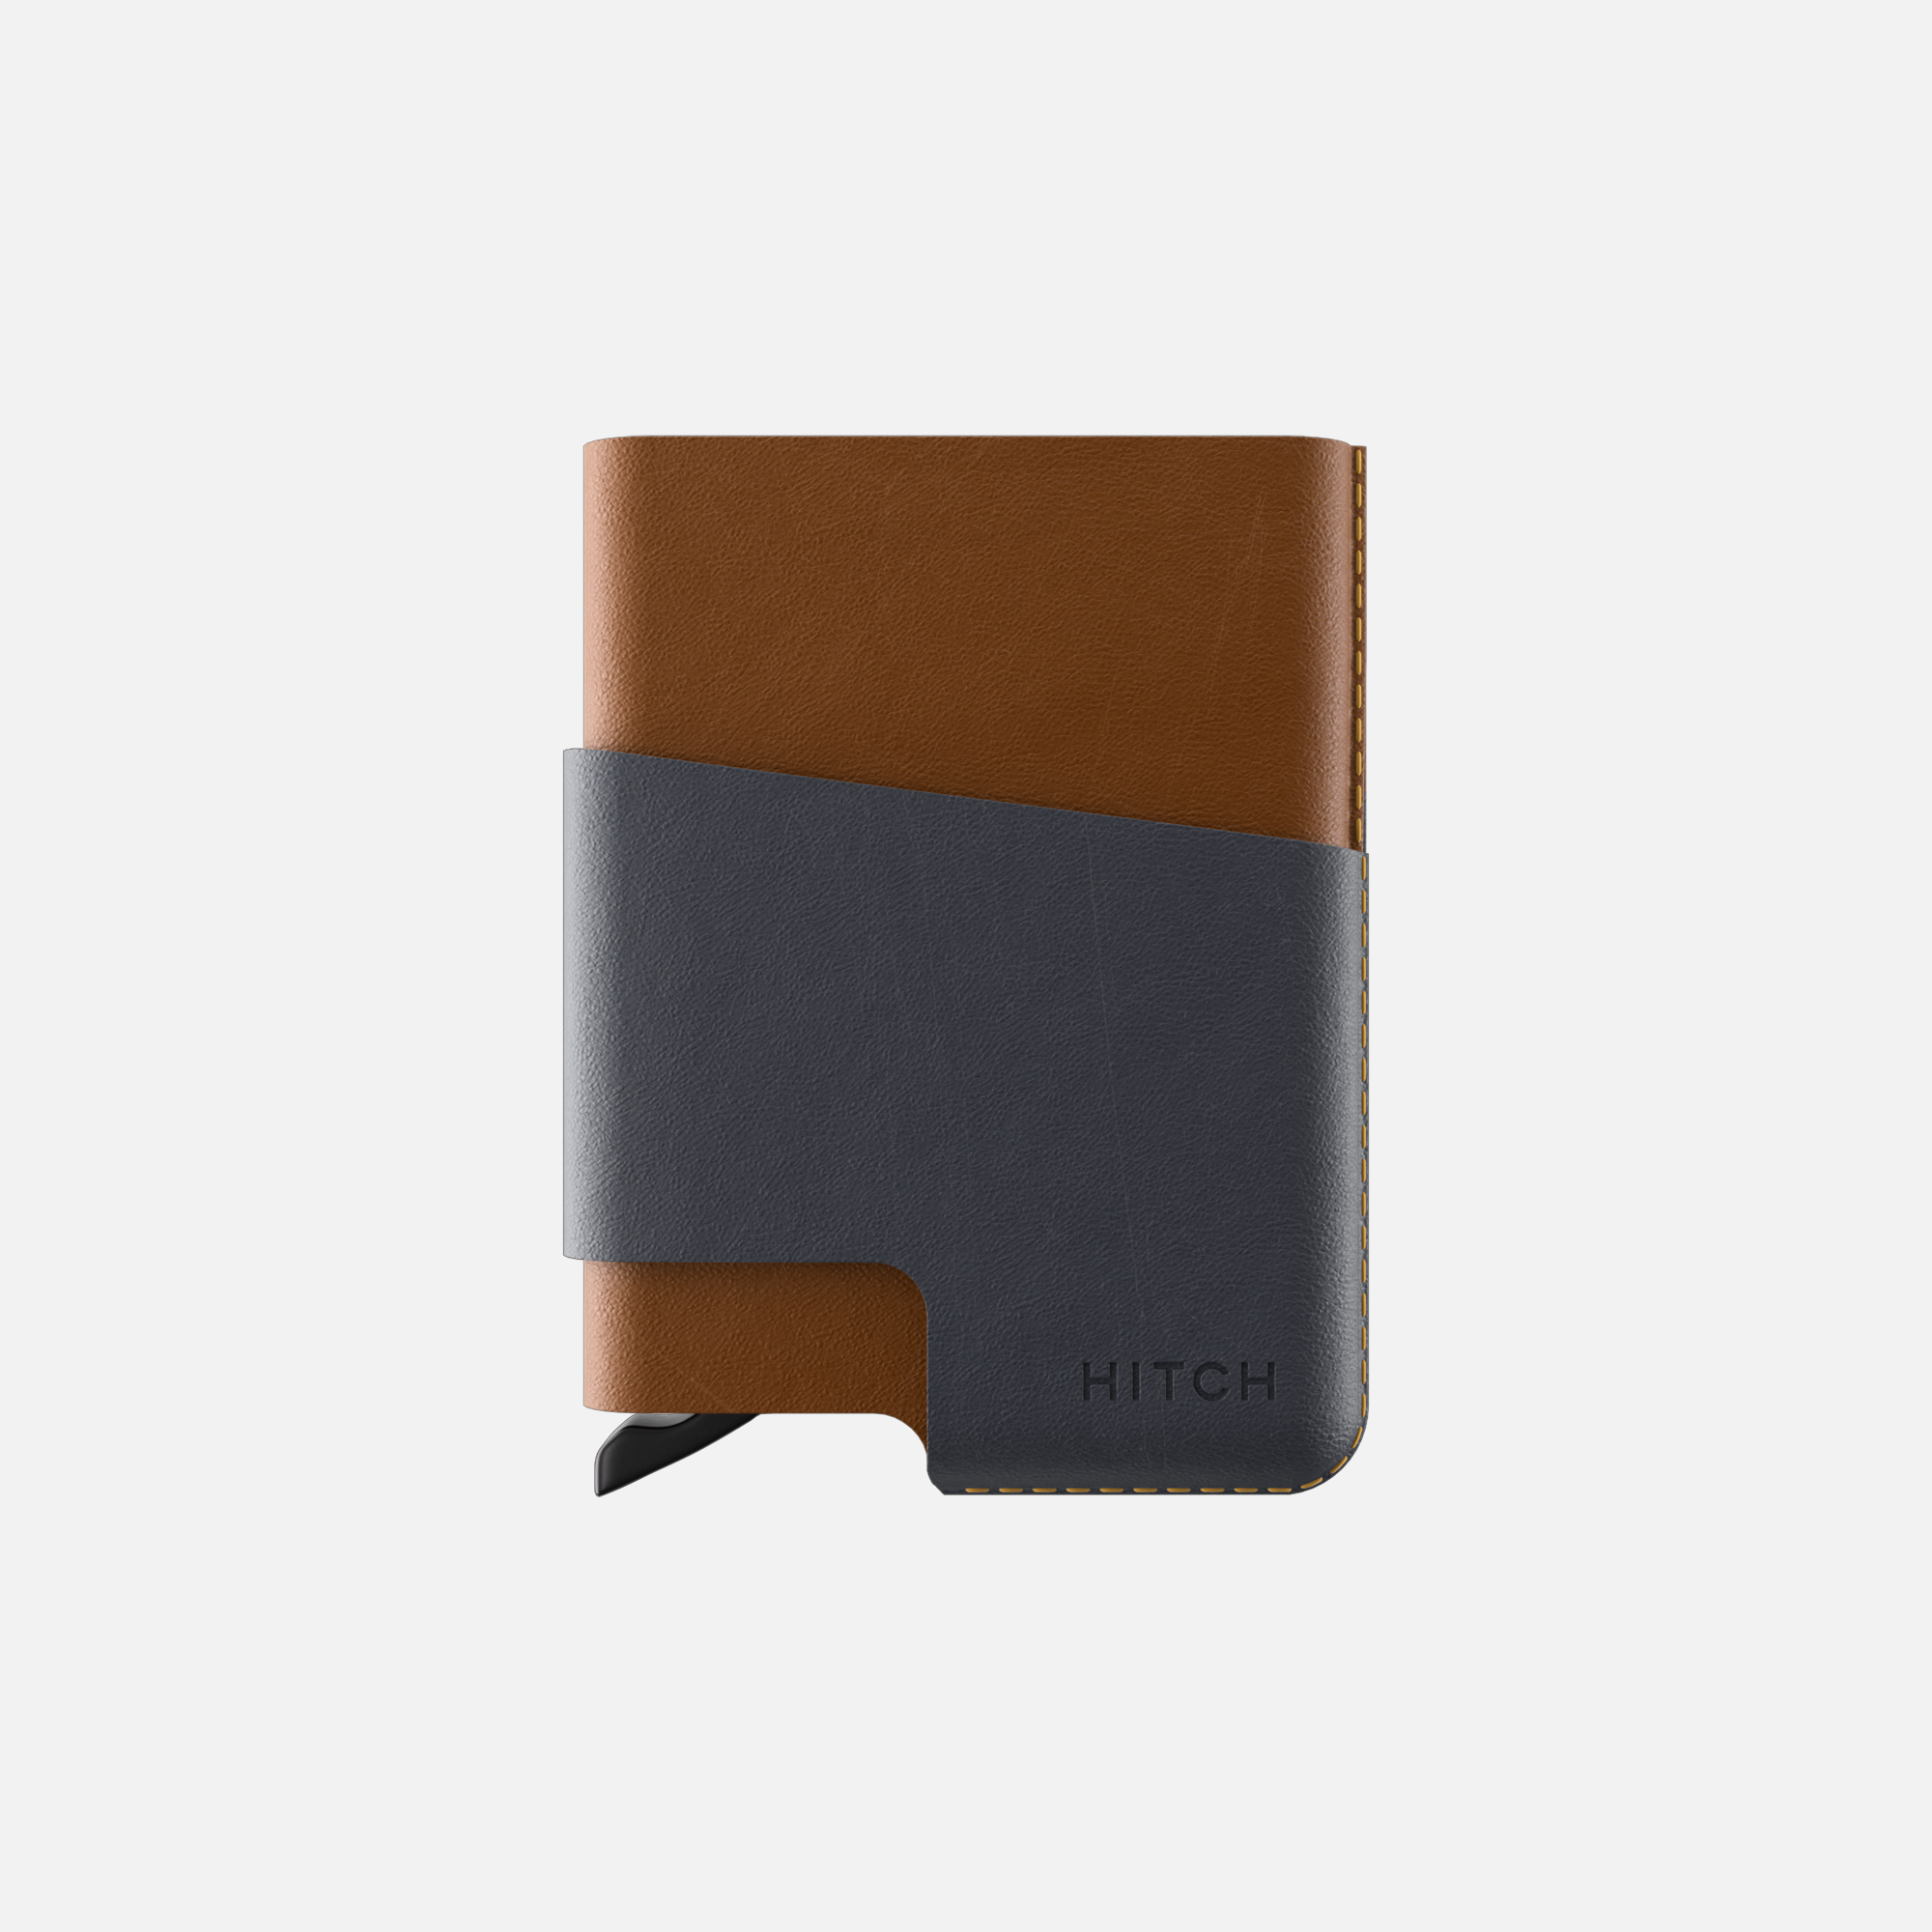 Elegant two-tone leather cardholder on white background.